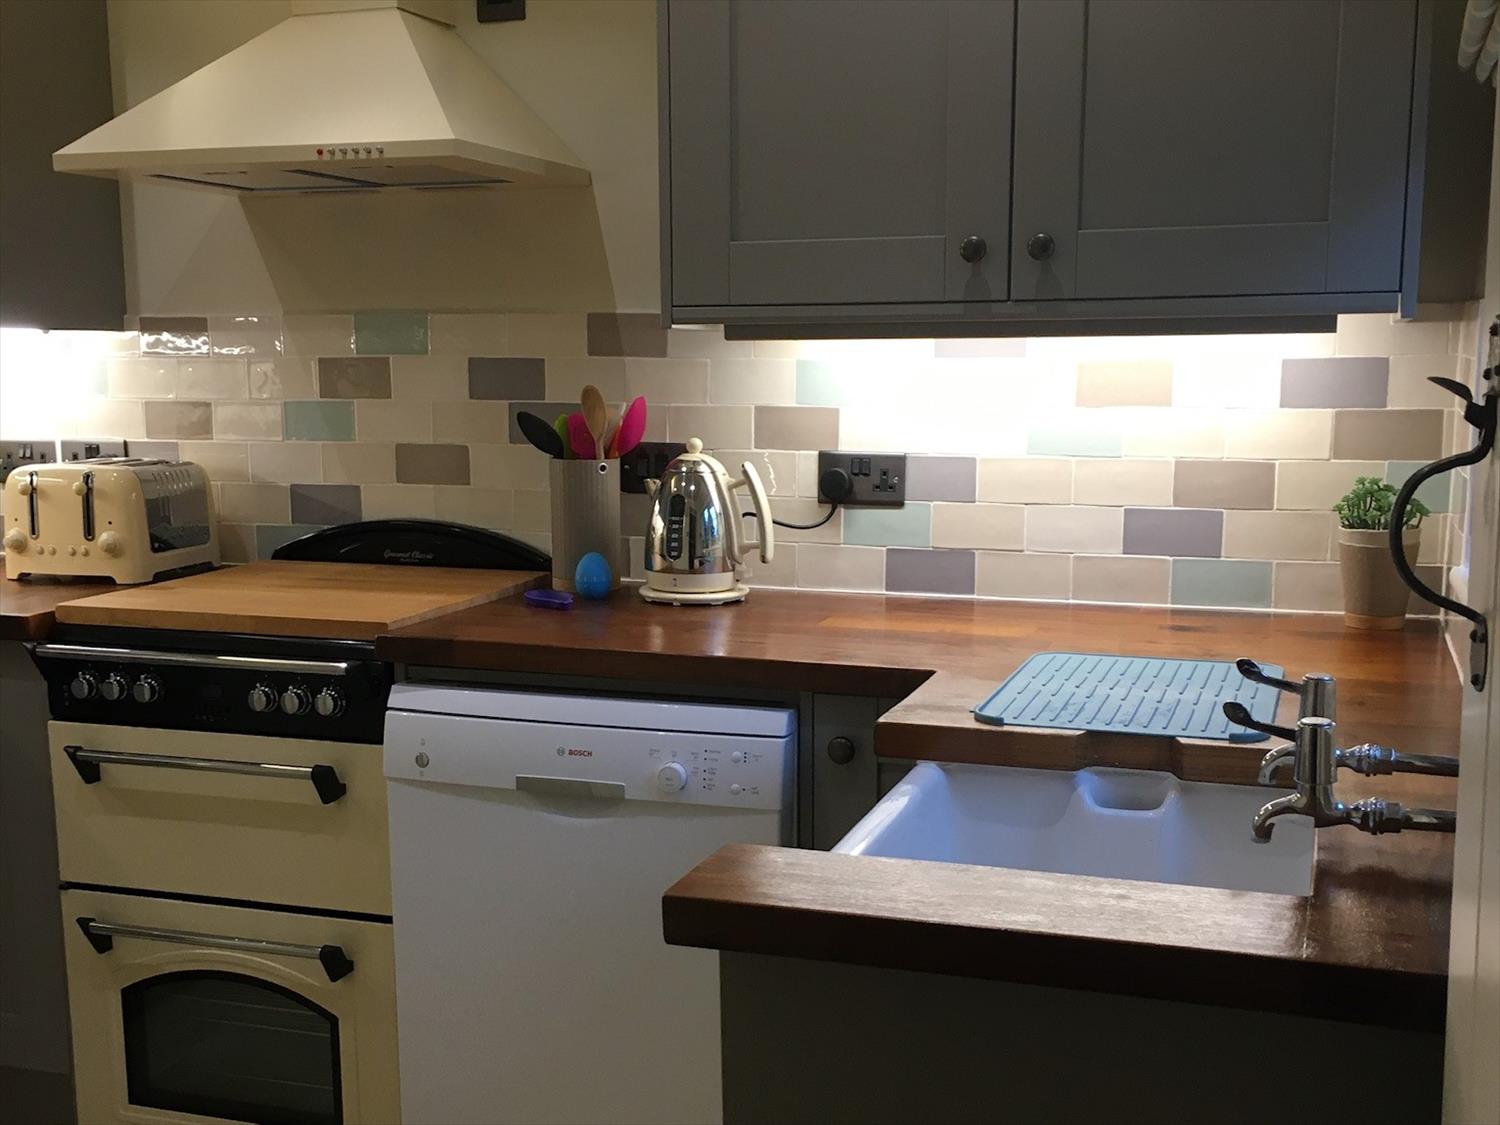 Dishwasher, electric oven and hob in kitchen in 9 Melinda Cottage East Runton @NorfolkCoastline